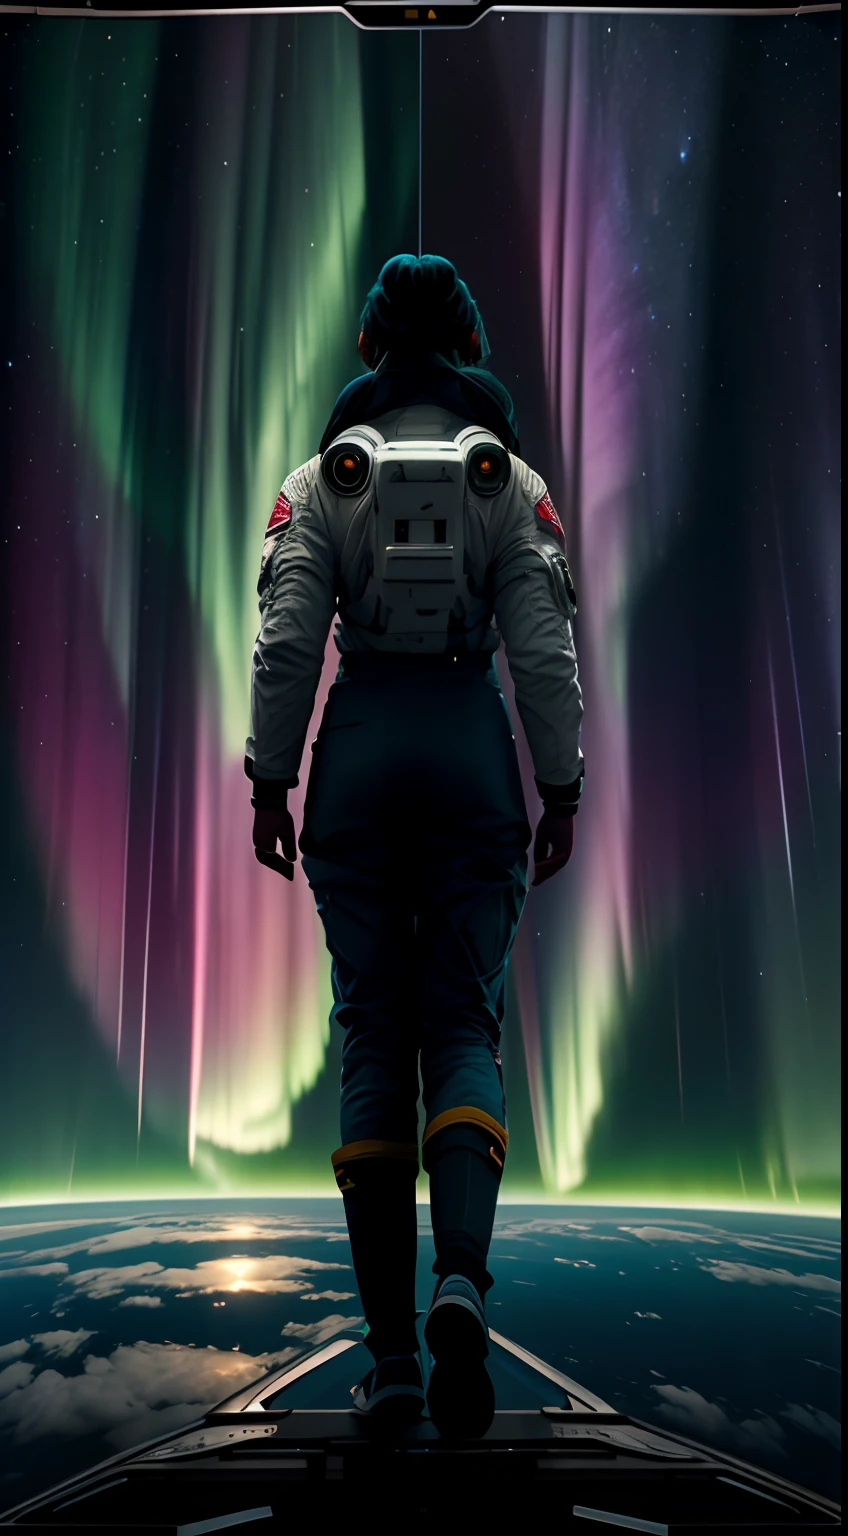 A metade superior da tela é Aurora na metade superior da tela、A metade inferior desenha uma astronauta